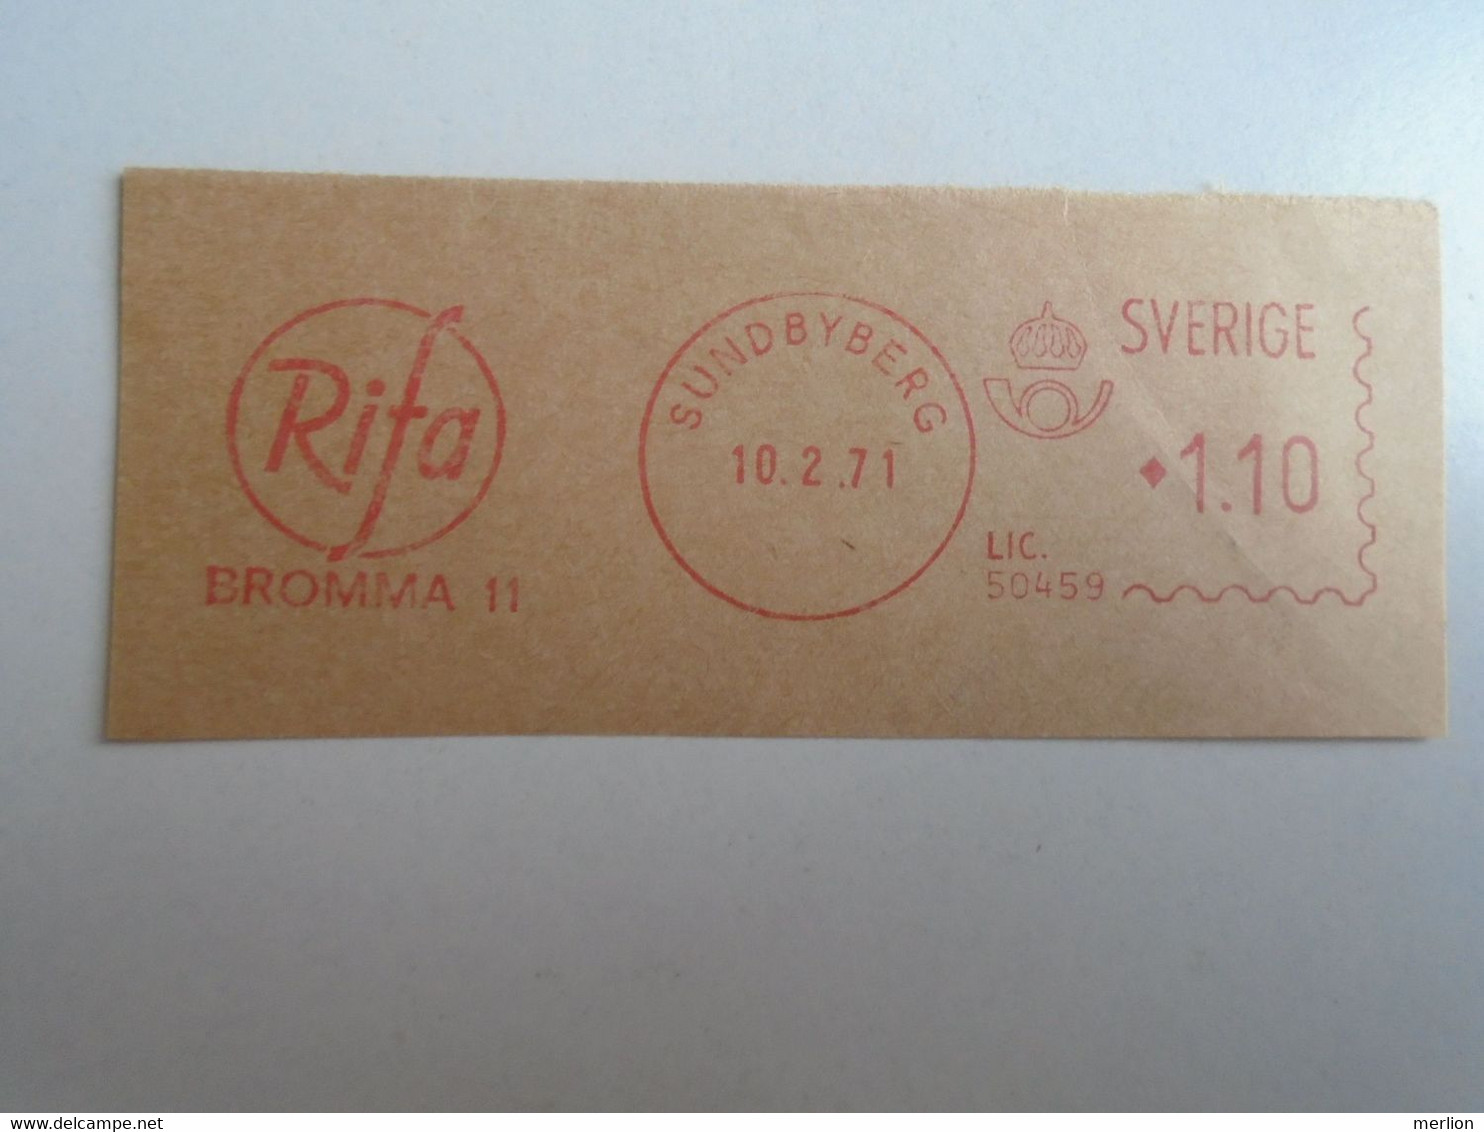 D191861  Sweden Sverige   RIFA  -Sundbyberg    1971  - 1.10 K - RED METER  FREISTEMPEL  EMA - Vignette [ATM]